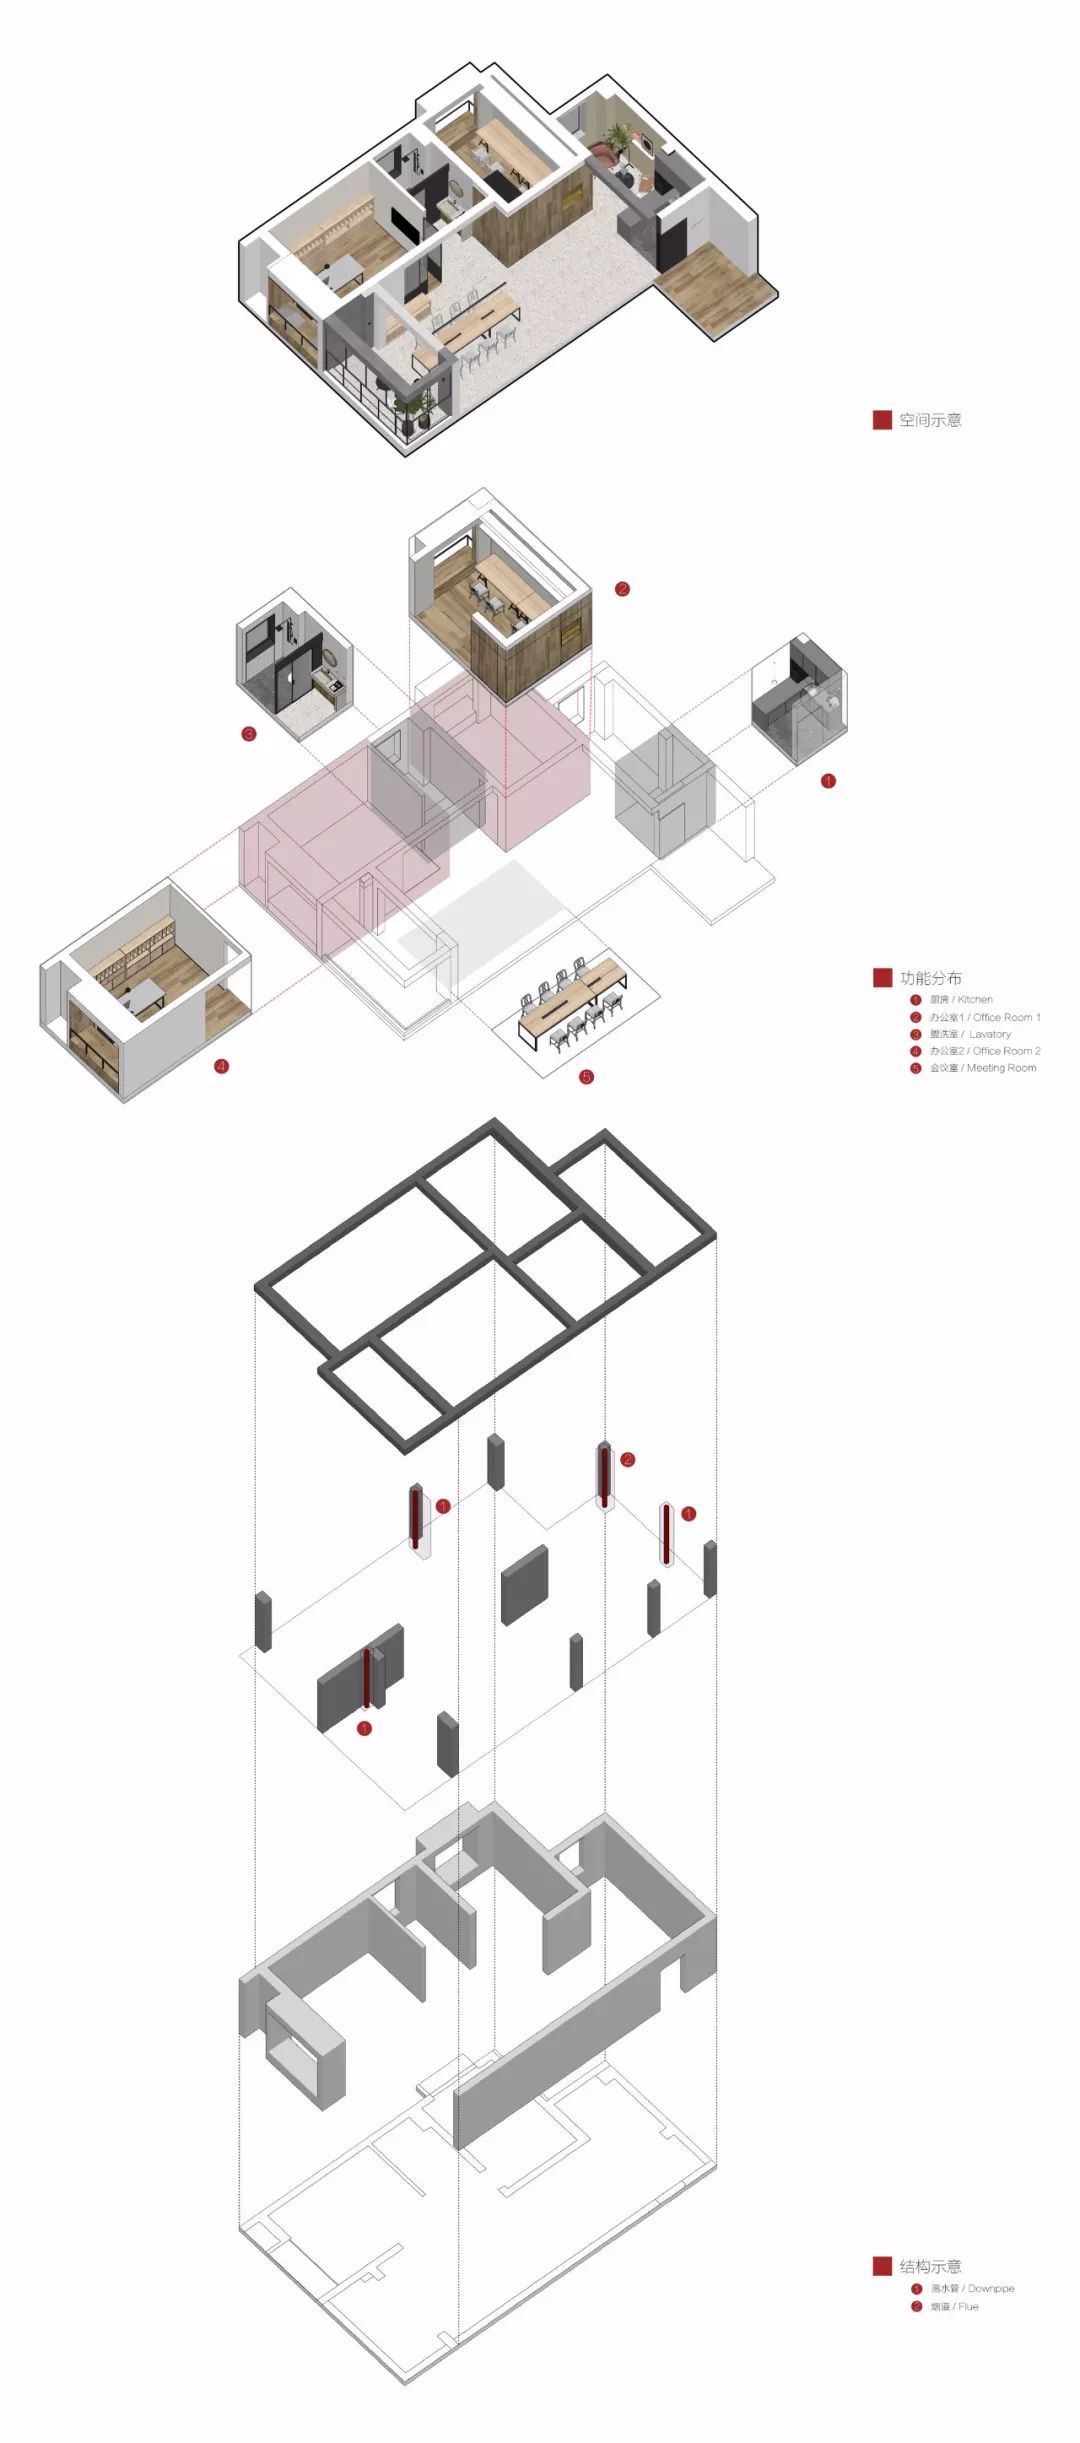 爆炸图项目名称:全文室内设计工作室空间设计:杭州全文室内设计视觉